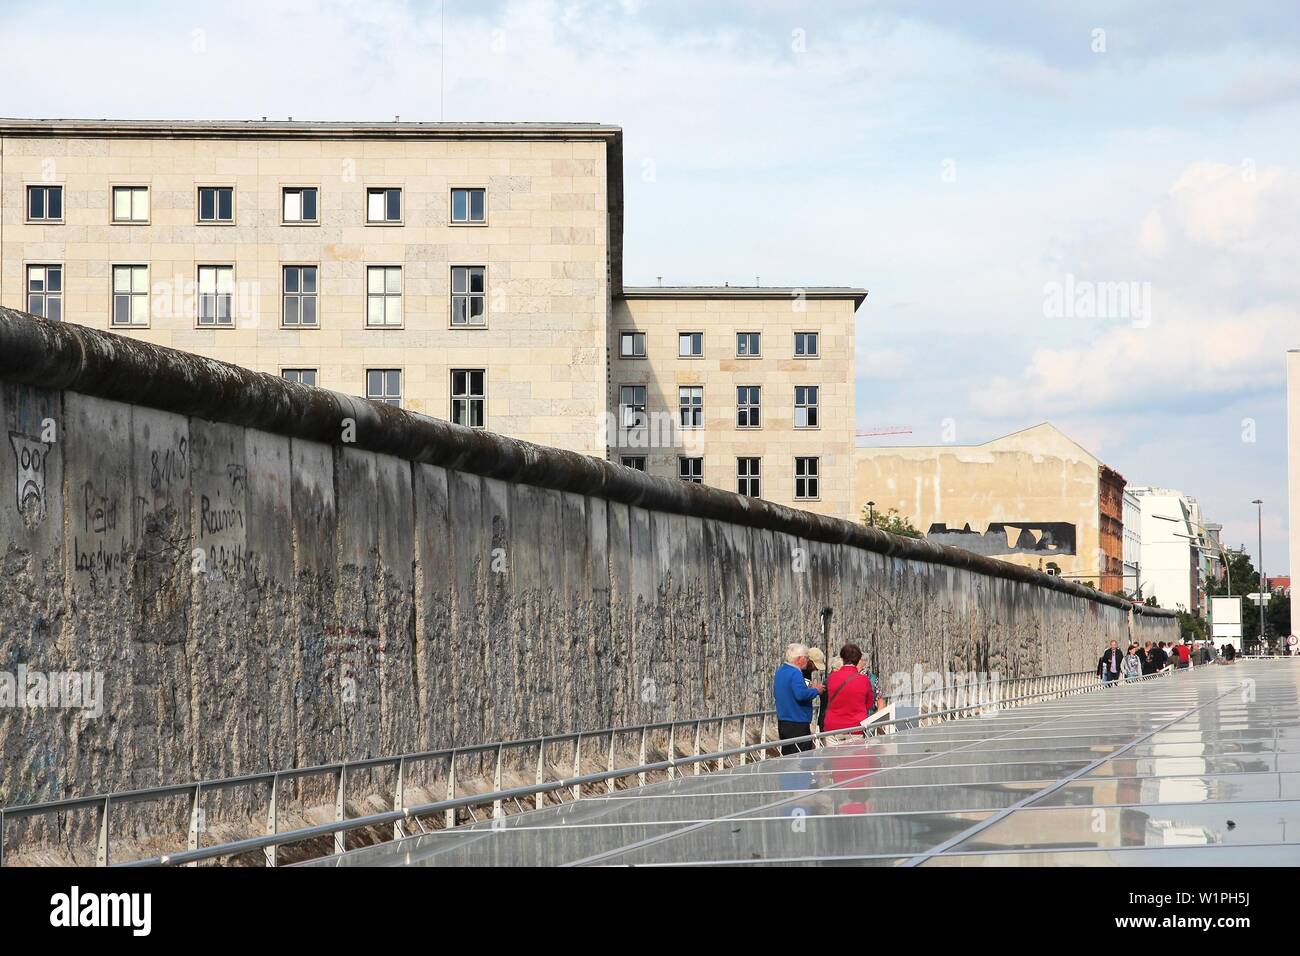 BERLIN, ALEMANIA - Agosto 26, 2014: la gente visite la histórica muralla de Berlín. El muro de Berlín fue una barrera histórica que existía desde 1961 hasta 1989. Foto de stock